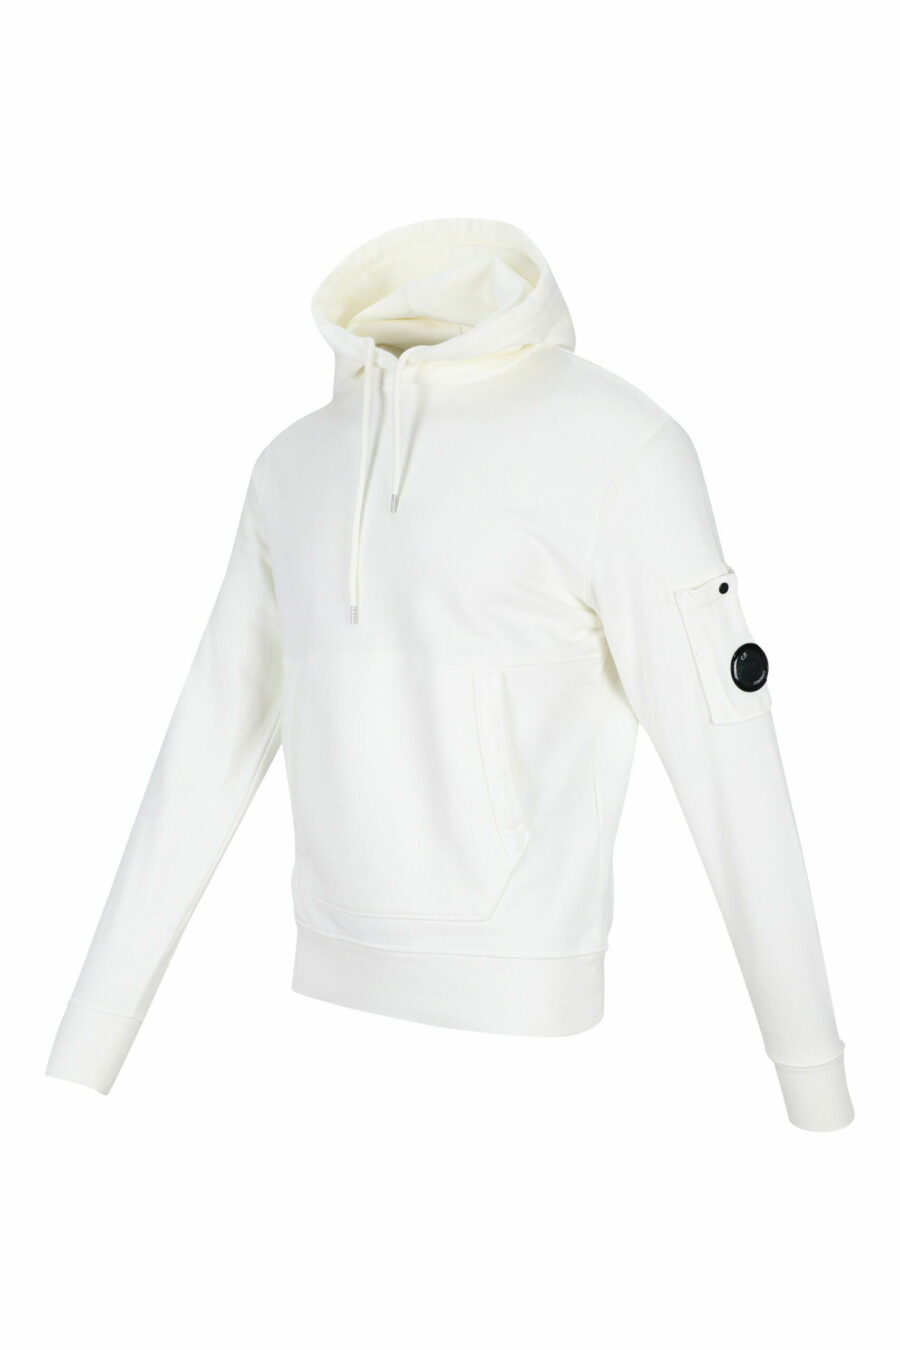 Weißes Kapuzensweatshirt mit seitlicher Logolinse - 7620943597783 1 skaliert